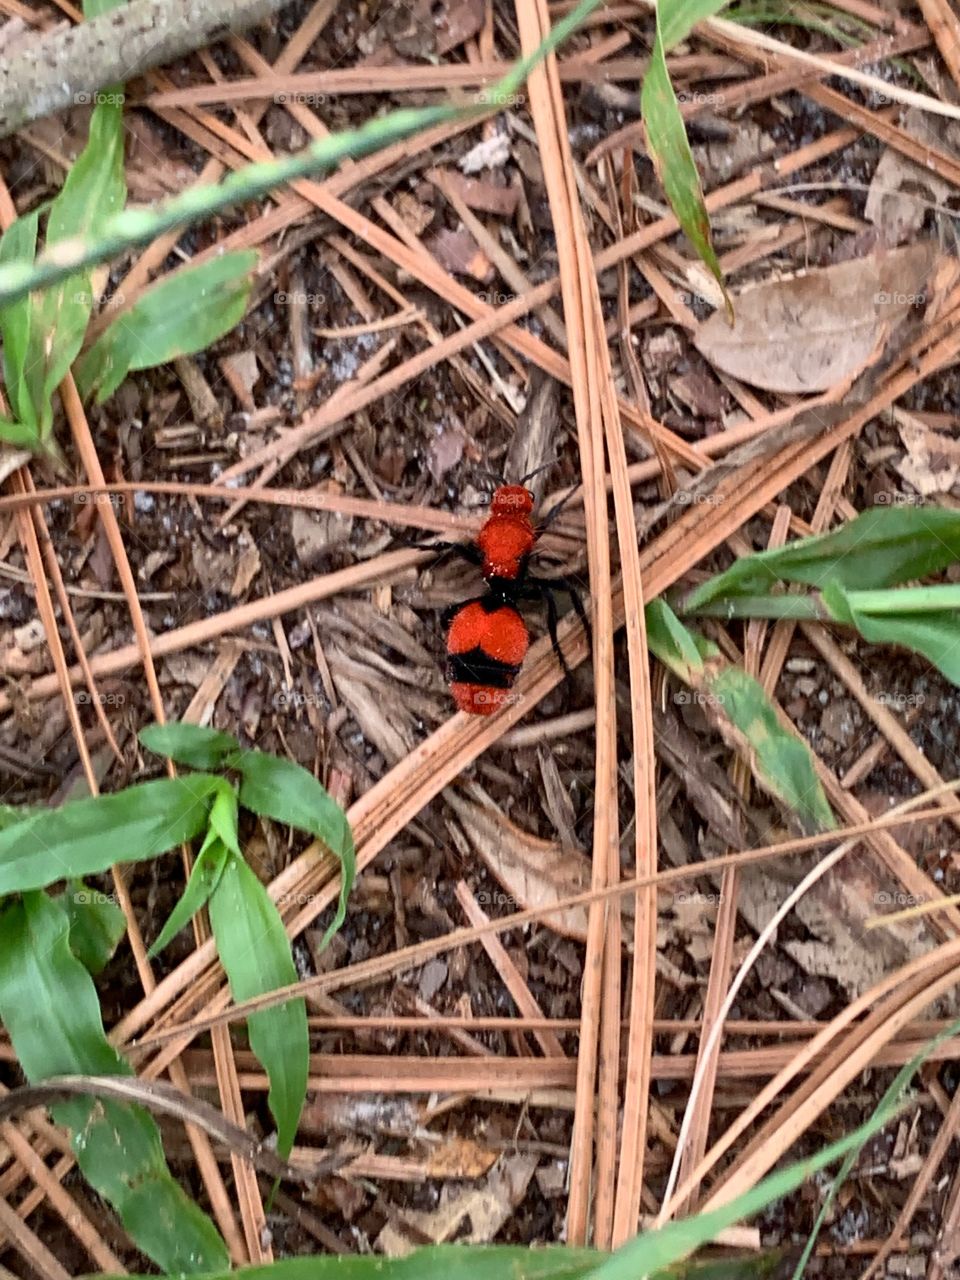 Dasymutilla occidentalis (red velvet ant or eastern velvet ant)